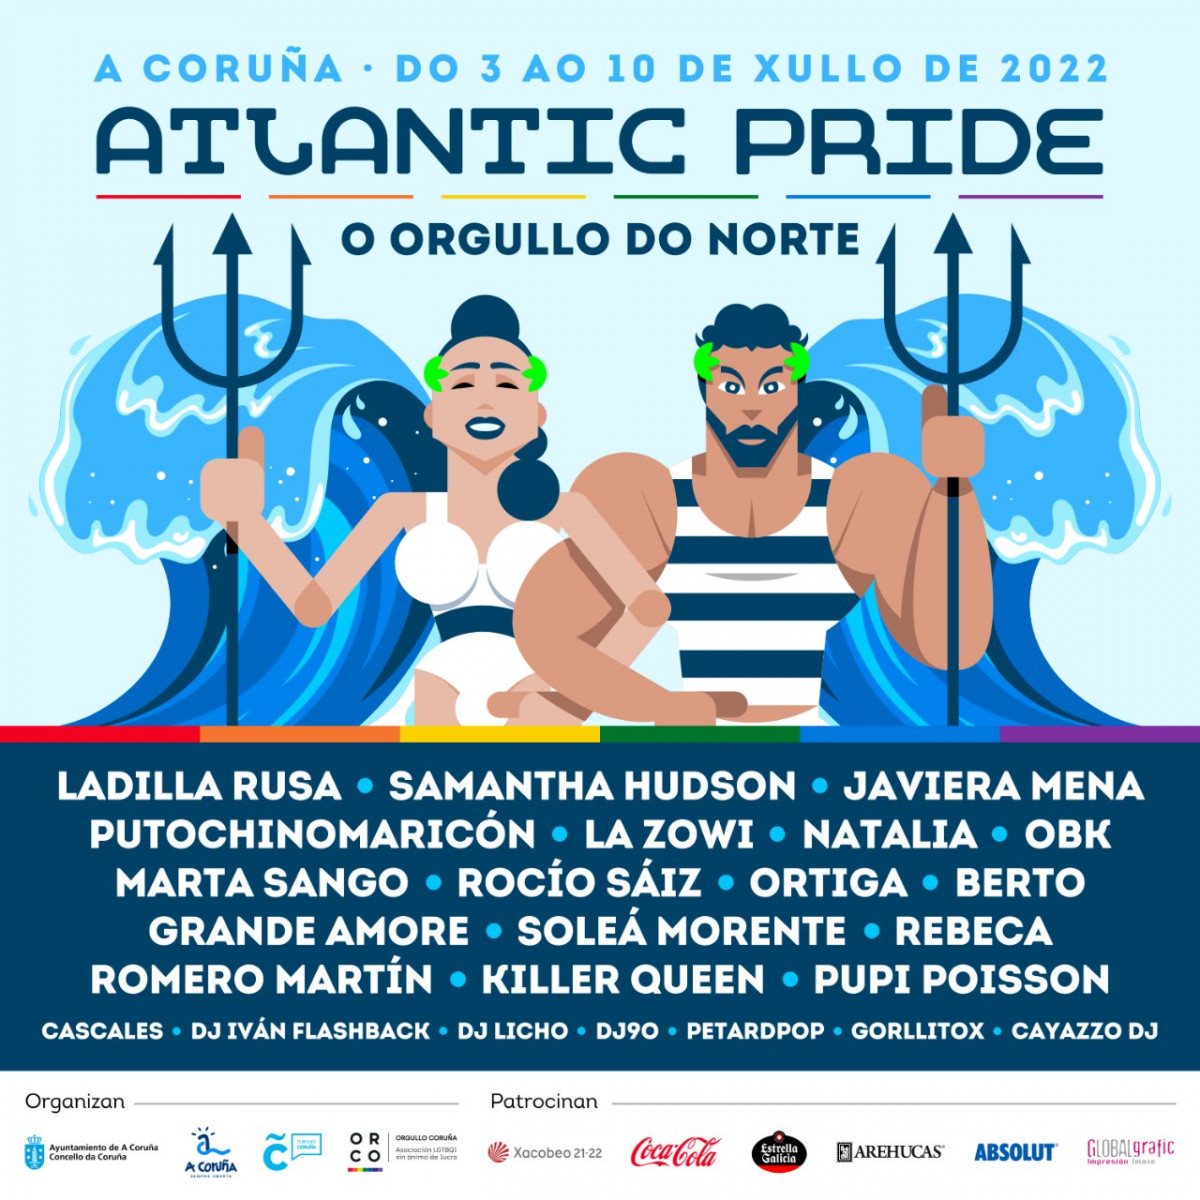 Atlantic pride